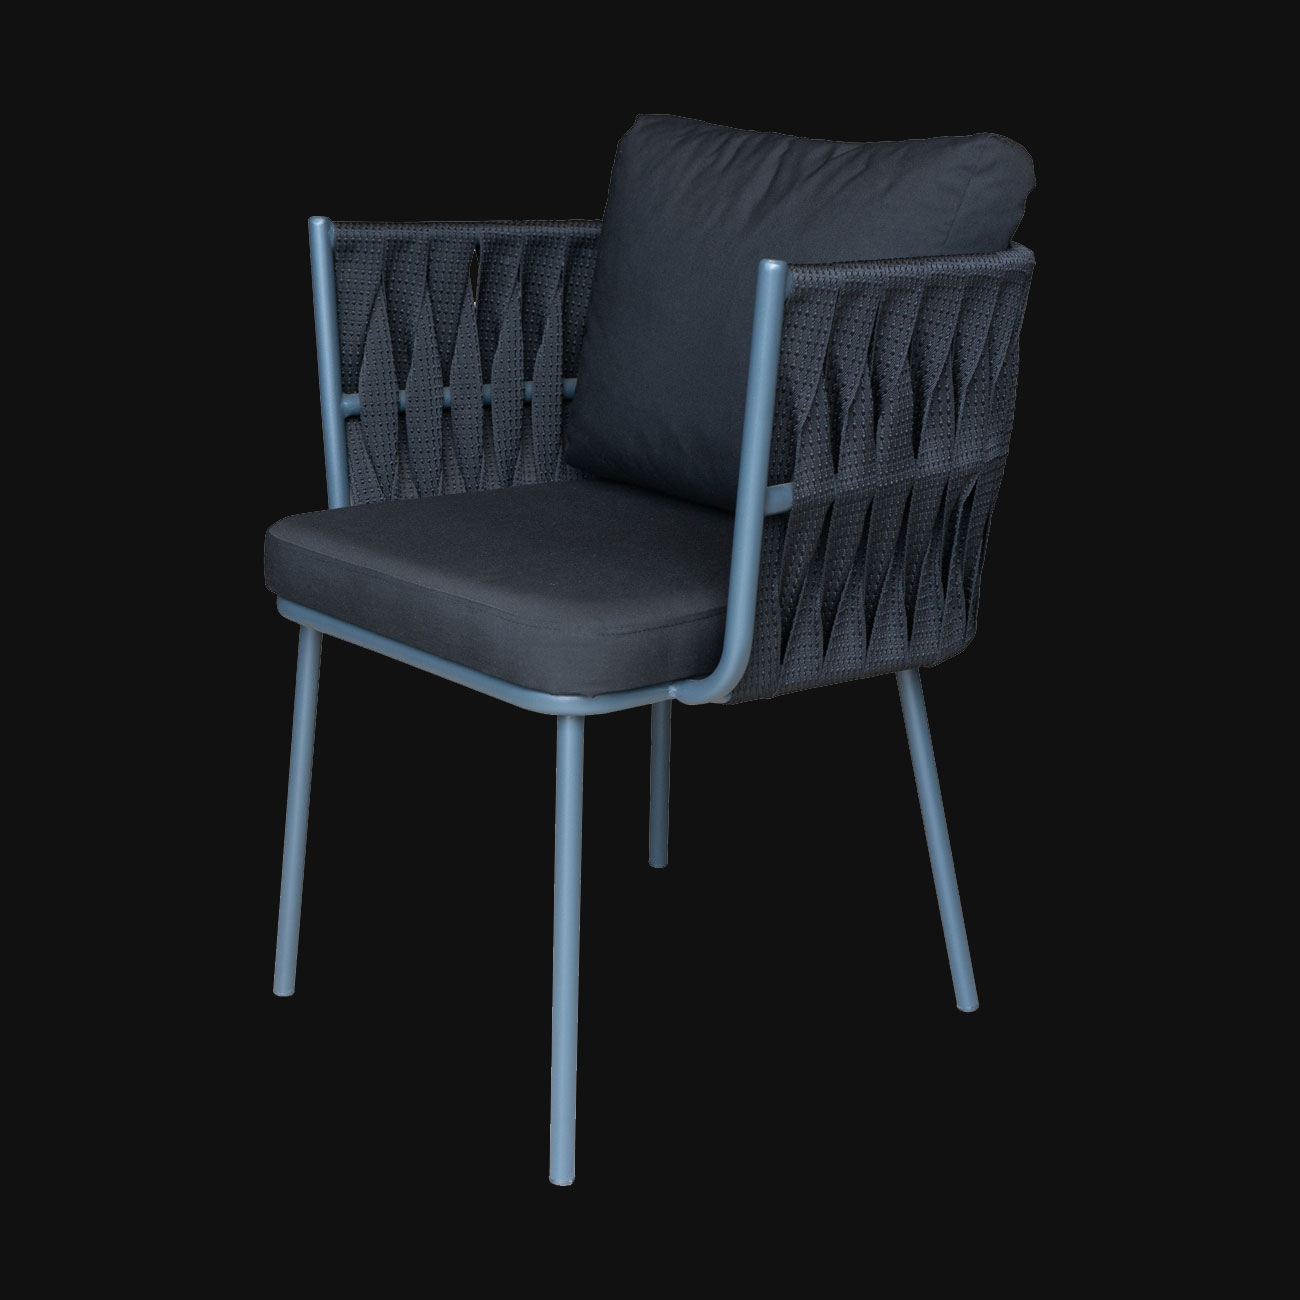 örgülü sandalye modelleri, sandalye fiyatları, sandalye tasarımları